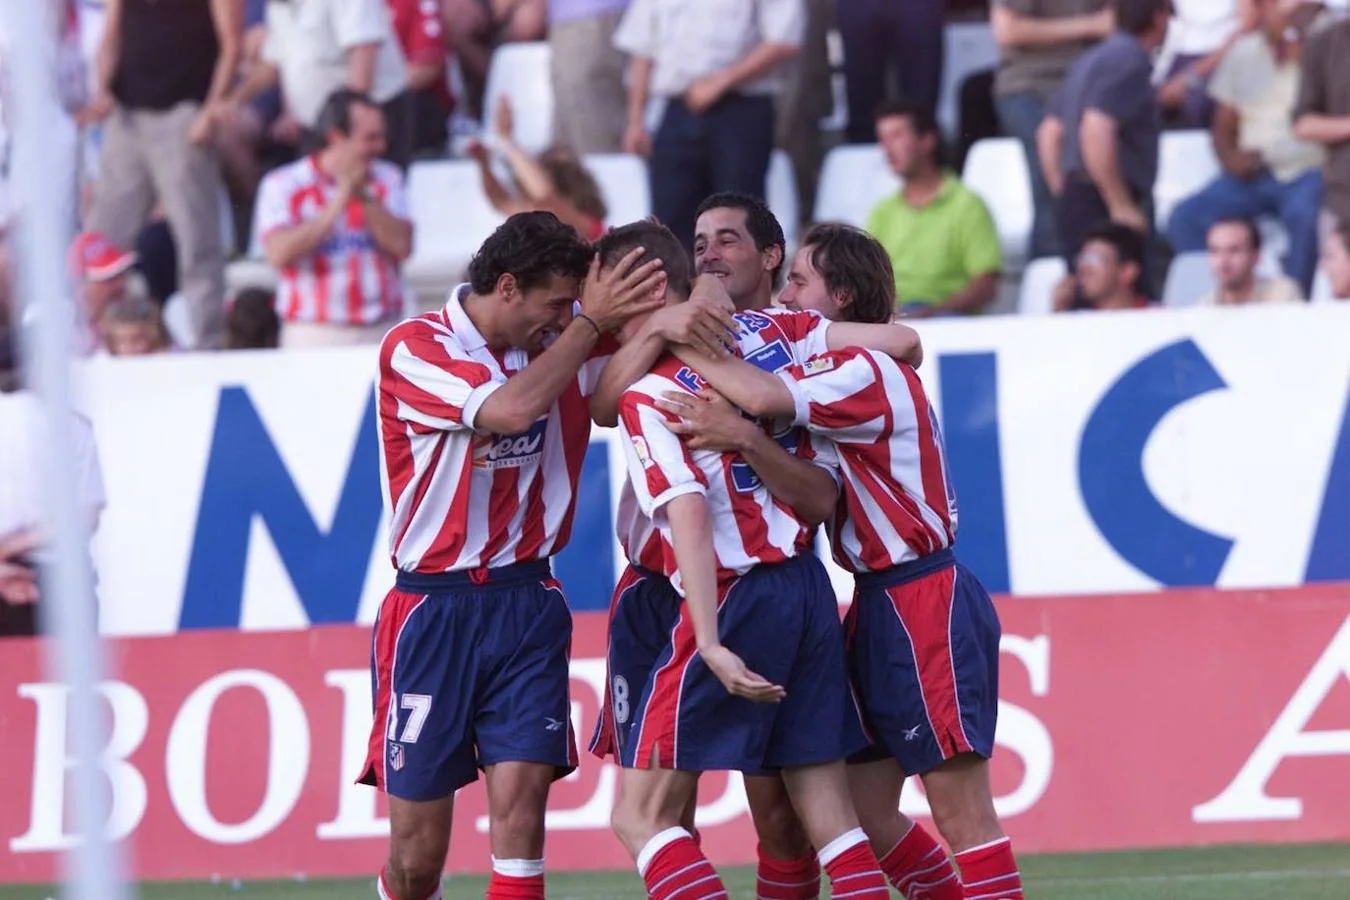 Primer gol de Torres con el Atlético. Lo marcó ante el Albacete. Año 2001. 